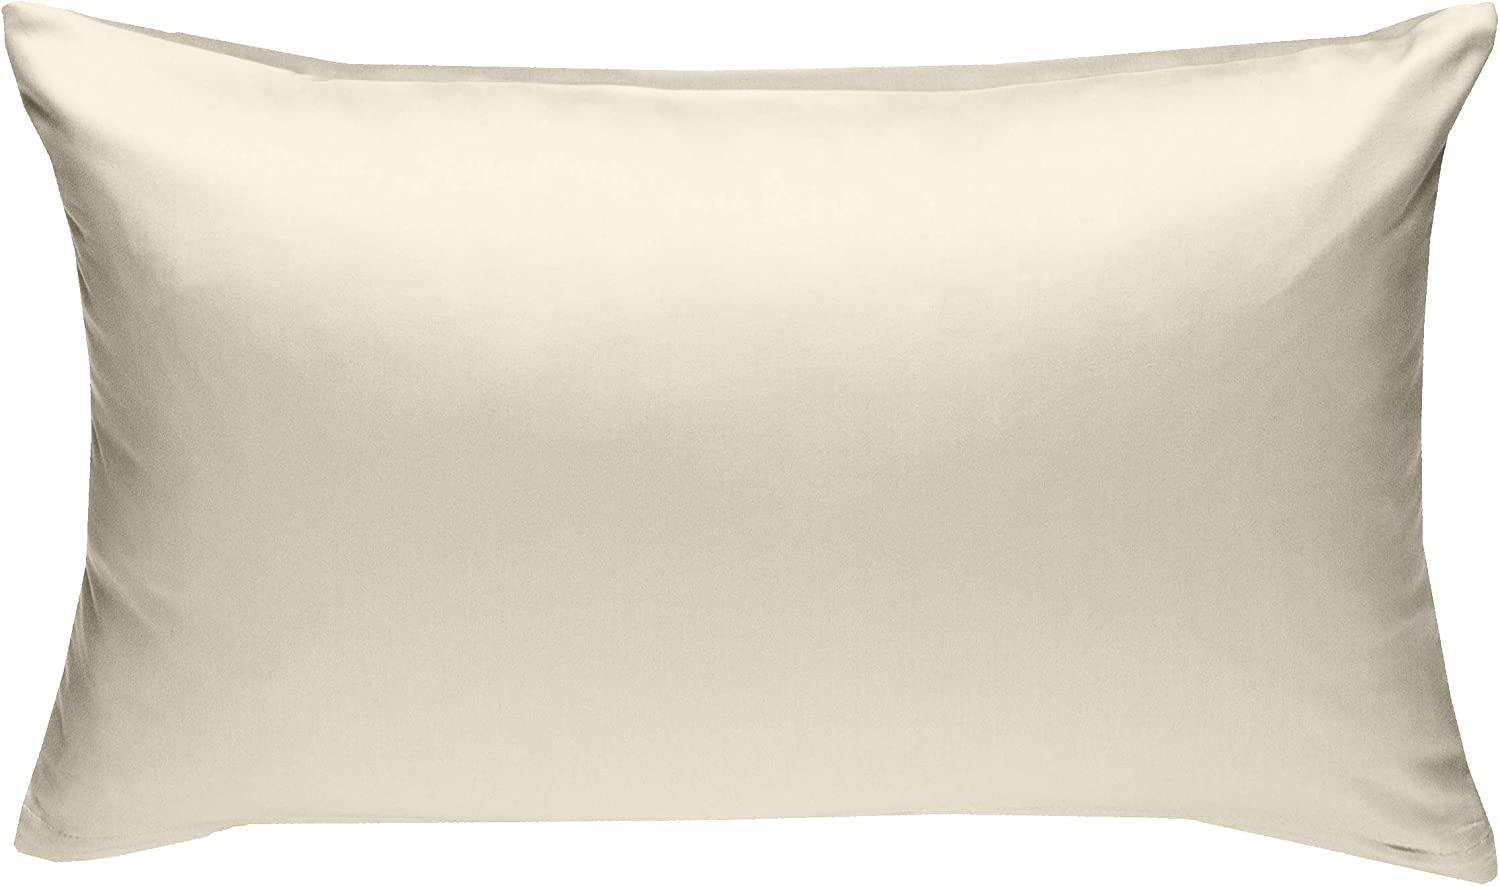 Bettwaesche-mit-Stil Mako-Satin / Baumwollsatin Bettwäsche uni / einfarbig natur Kissenbezug 50x70 cm Bild 1